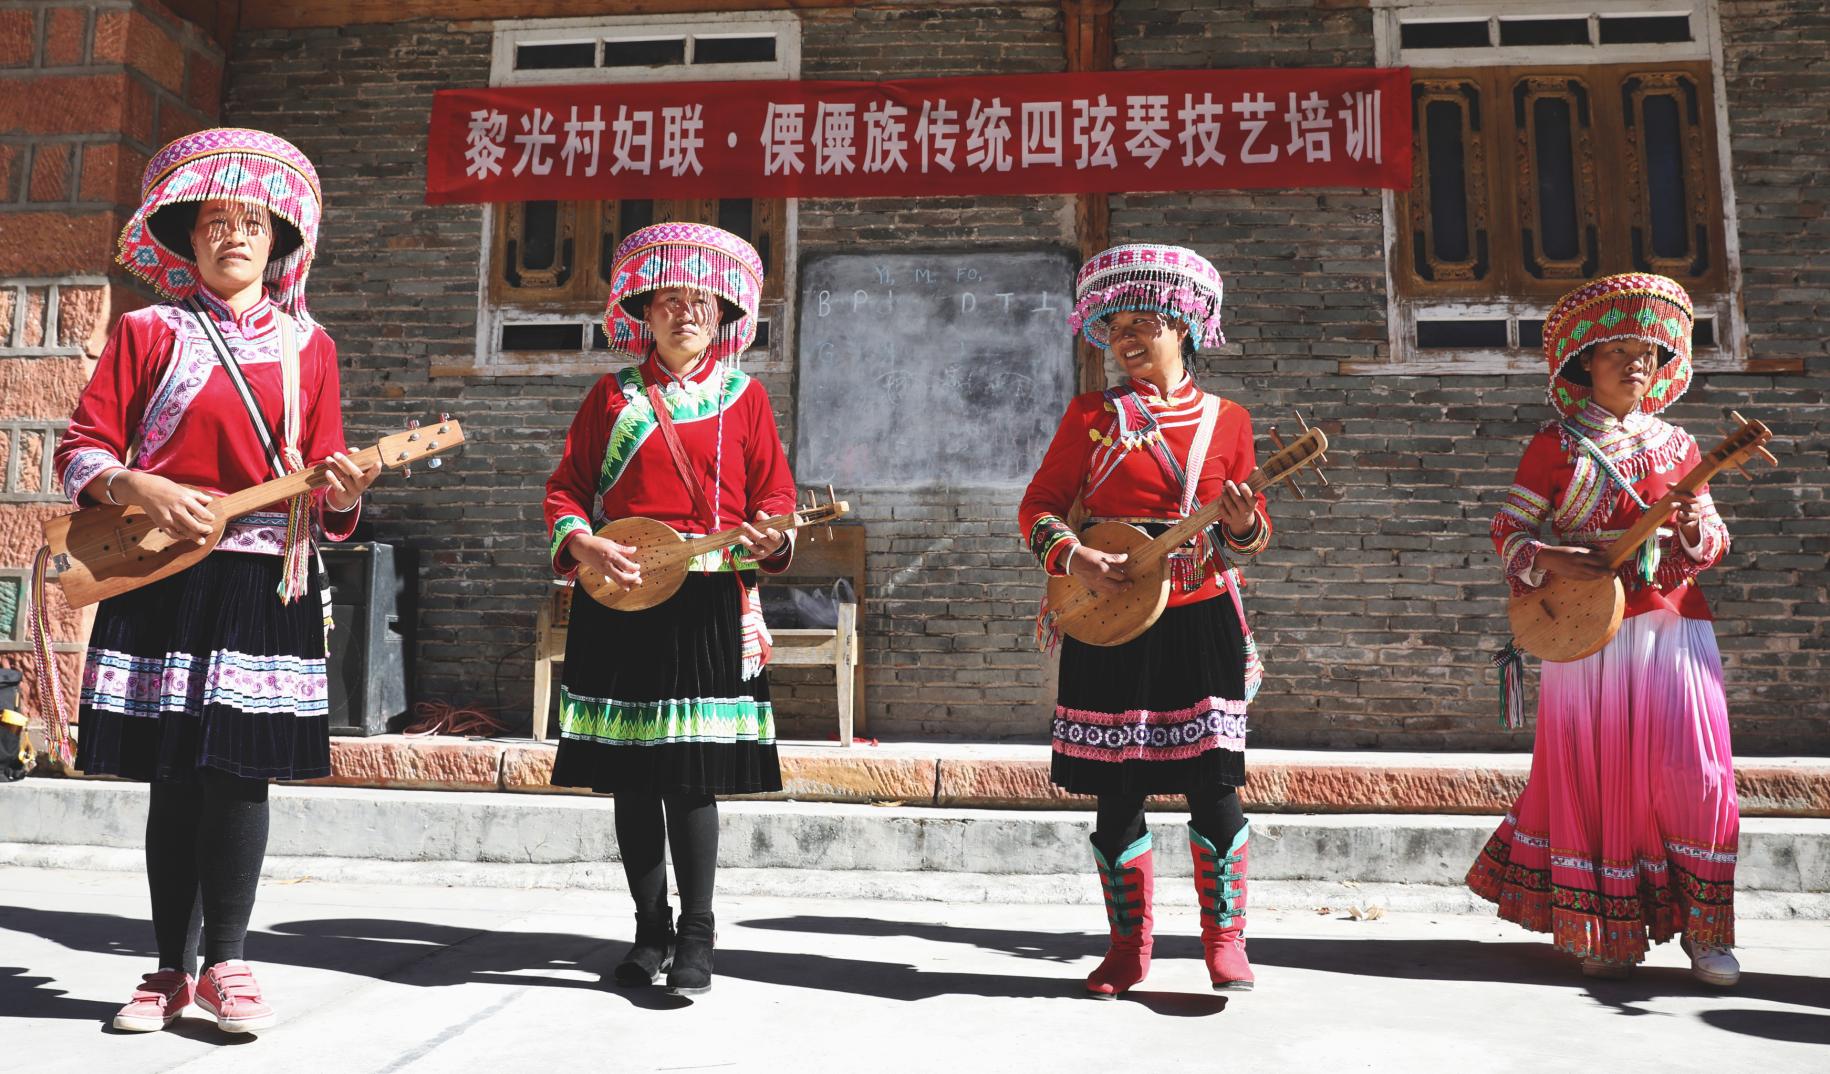 أربع نساء في قرية ليغوانغ يعزفن على الكيبان.